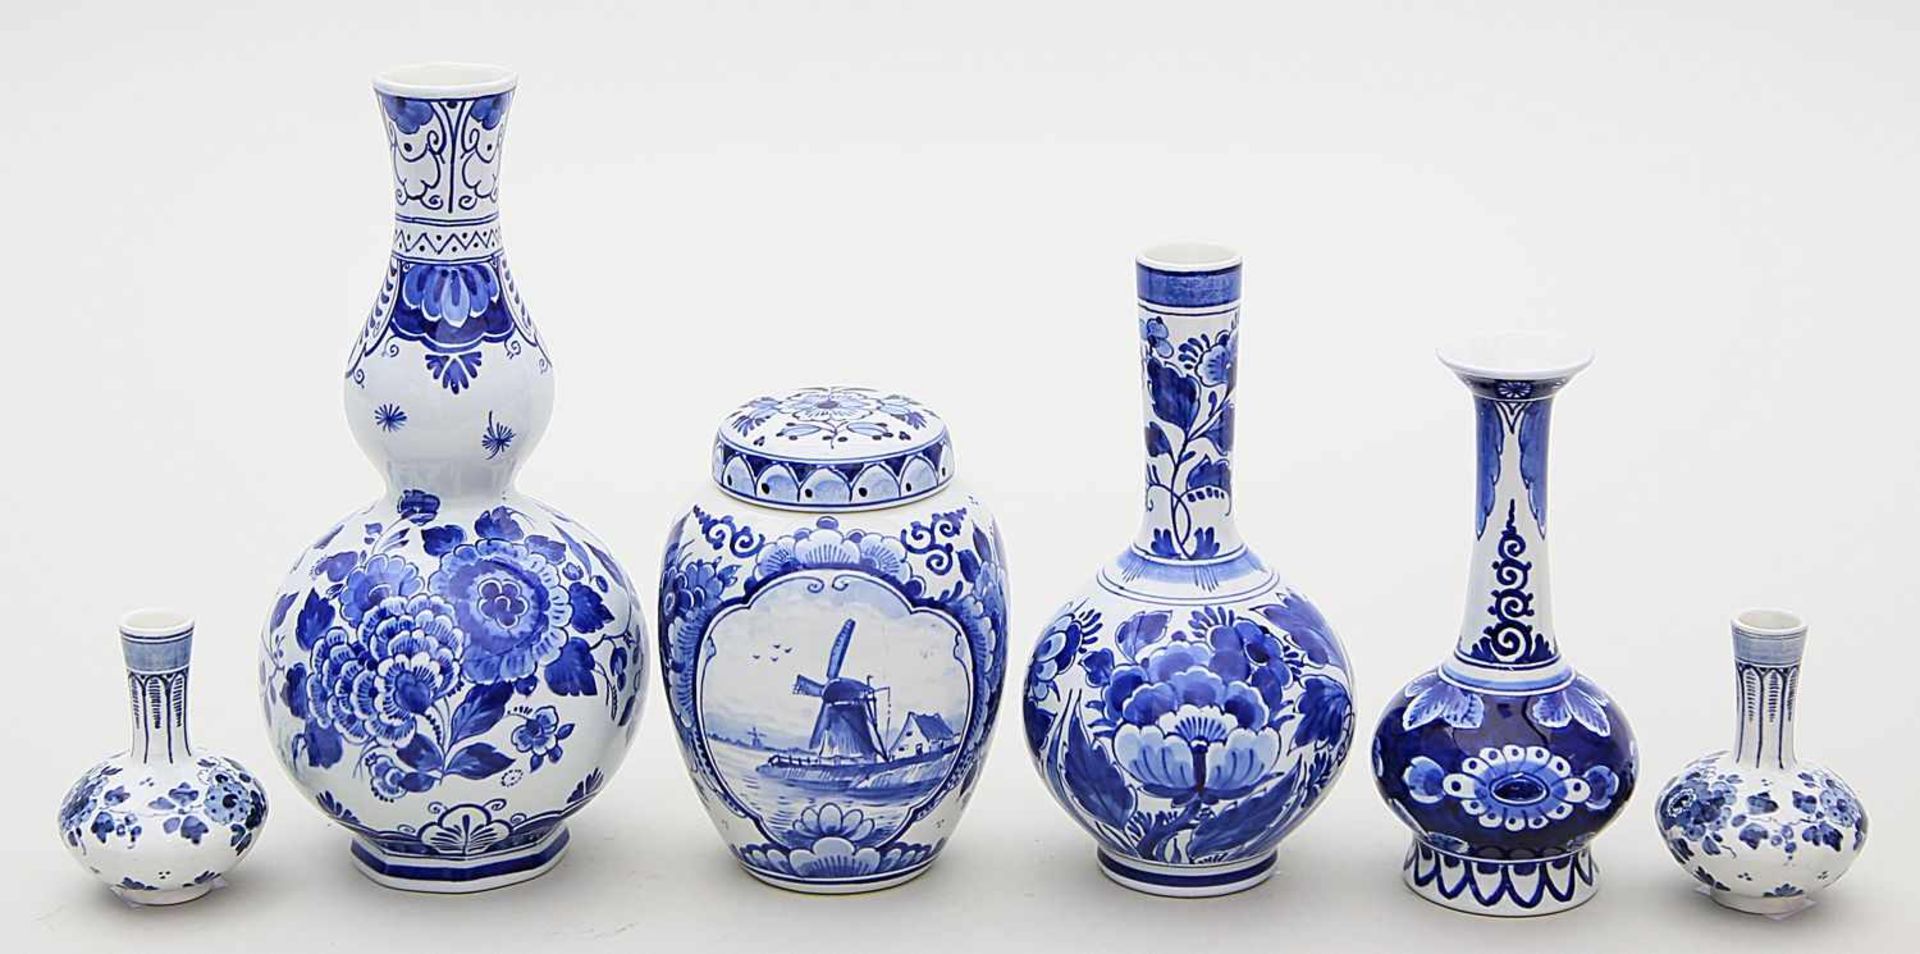 Fünf Vasen und Teedose, Delft.Fayence. Verschiedene Formen und Bemalungen in Unterglasurblau.